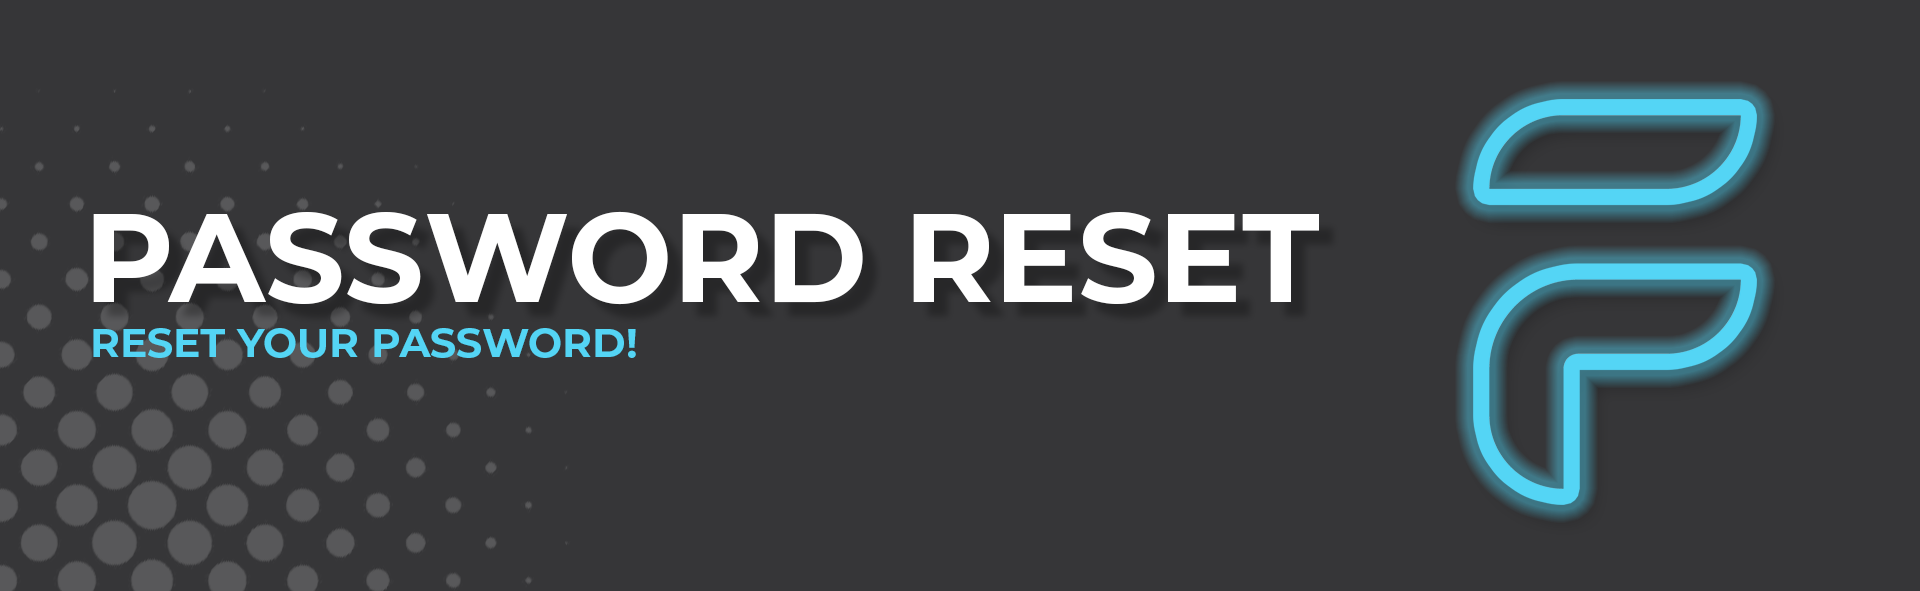 Password Reset Header